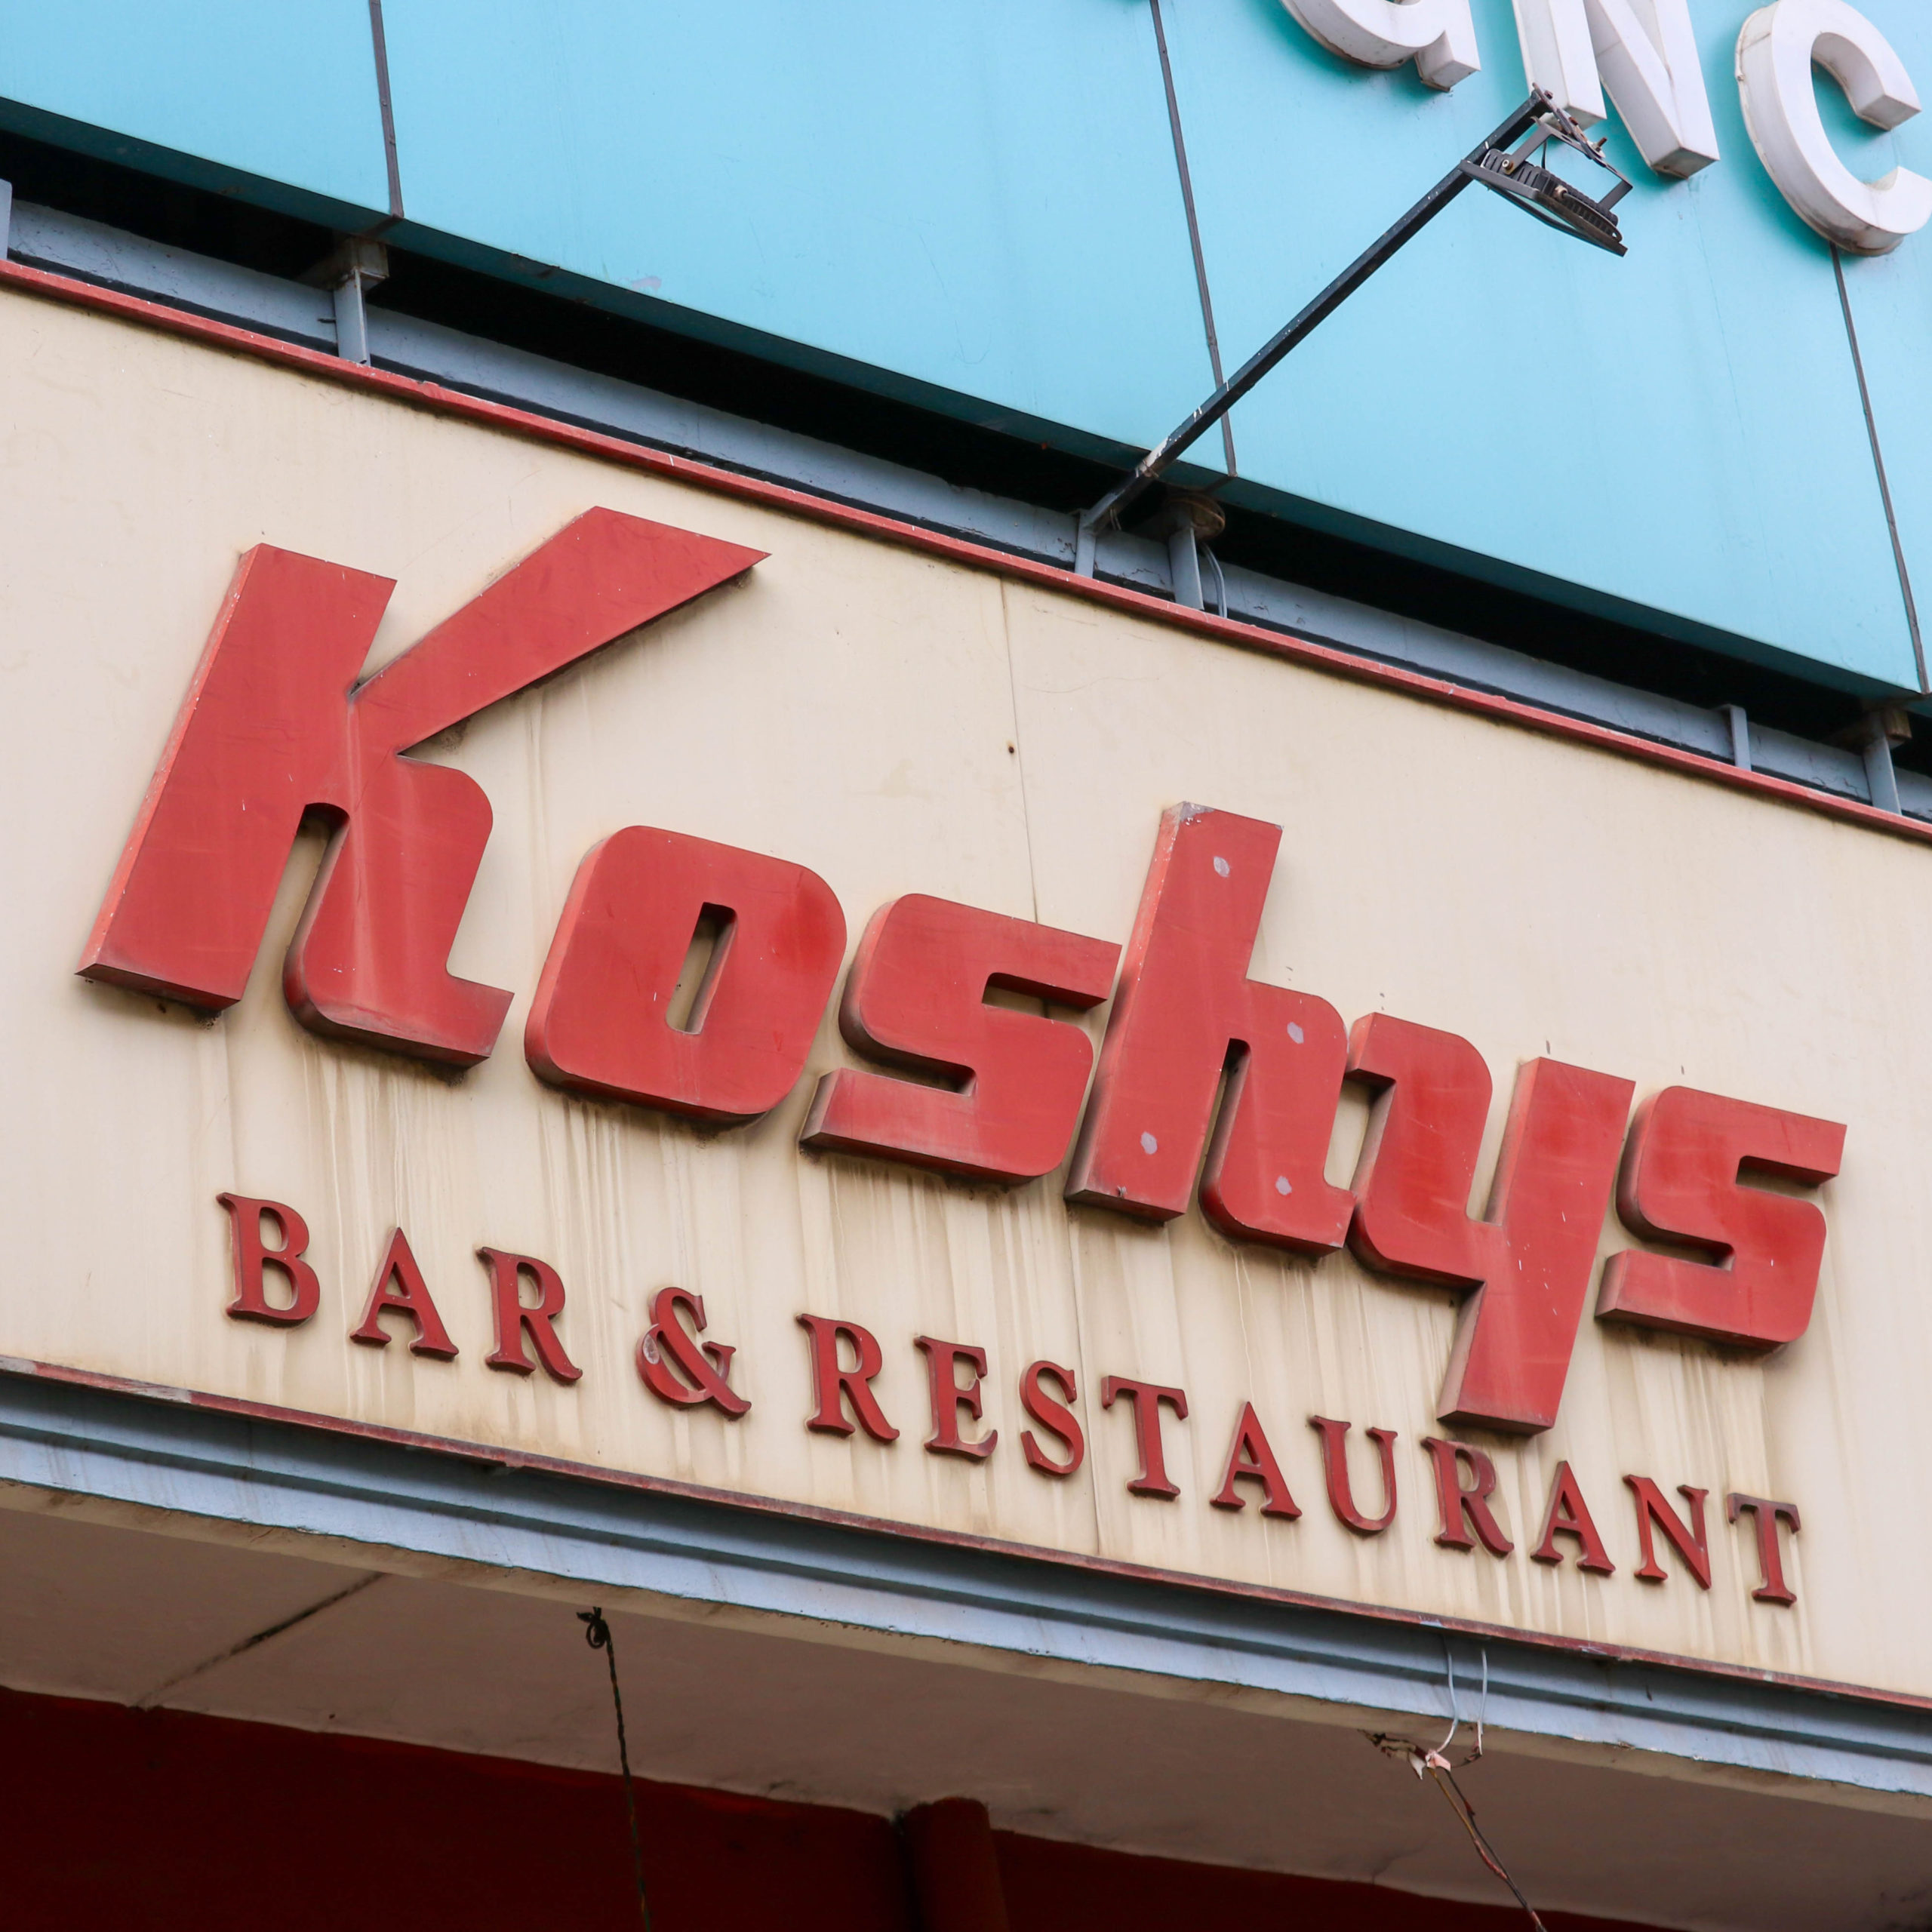 Koshys Bar & Restaurant